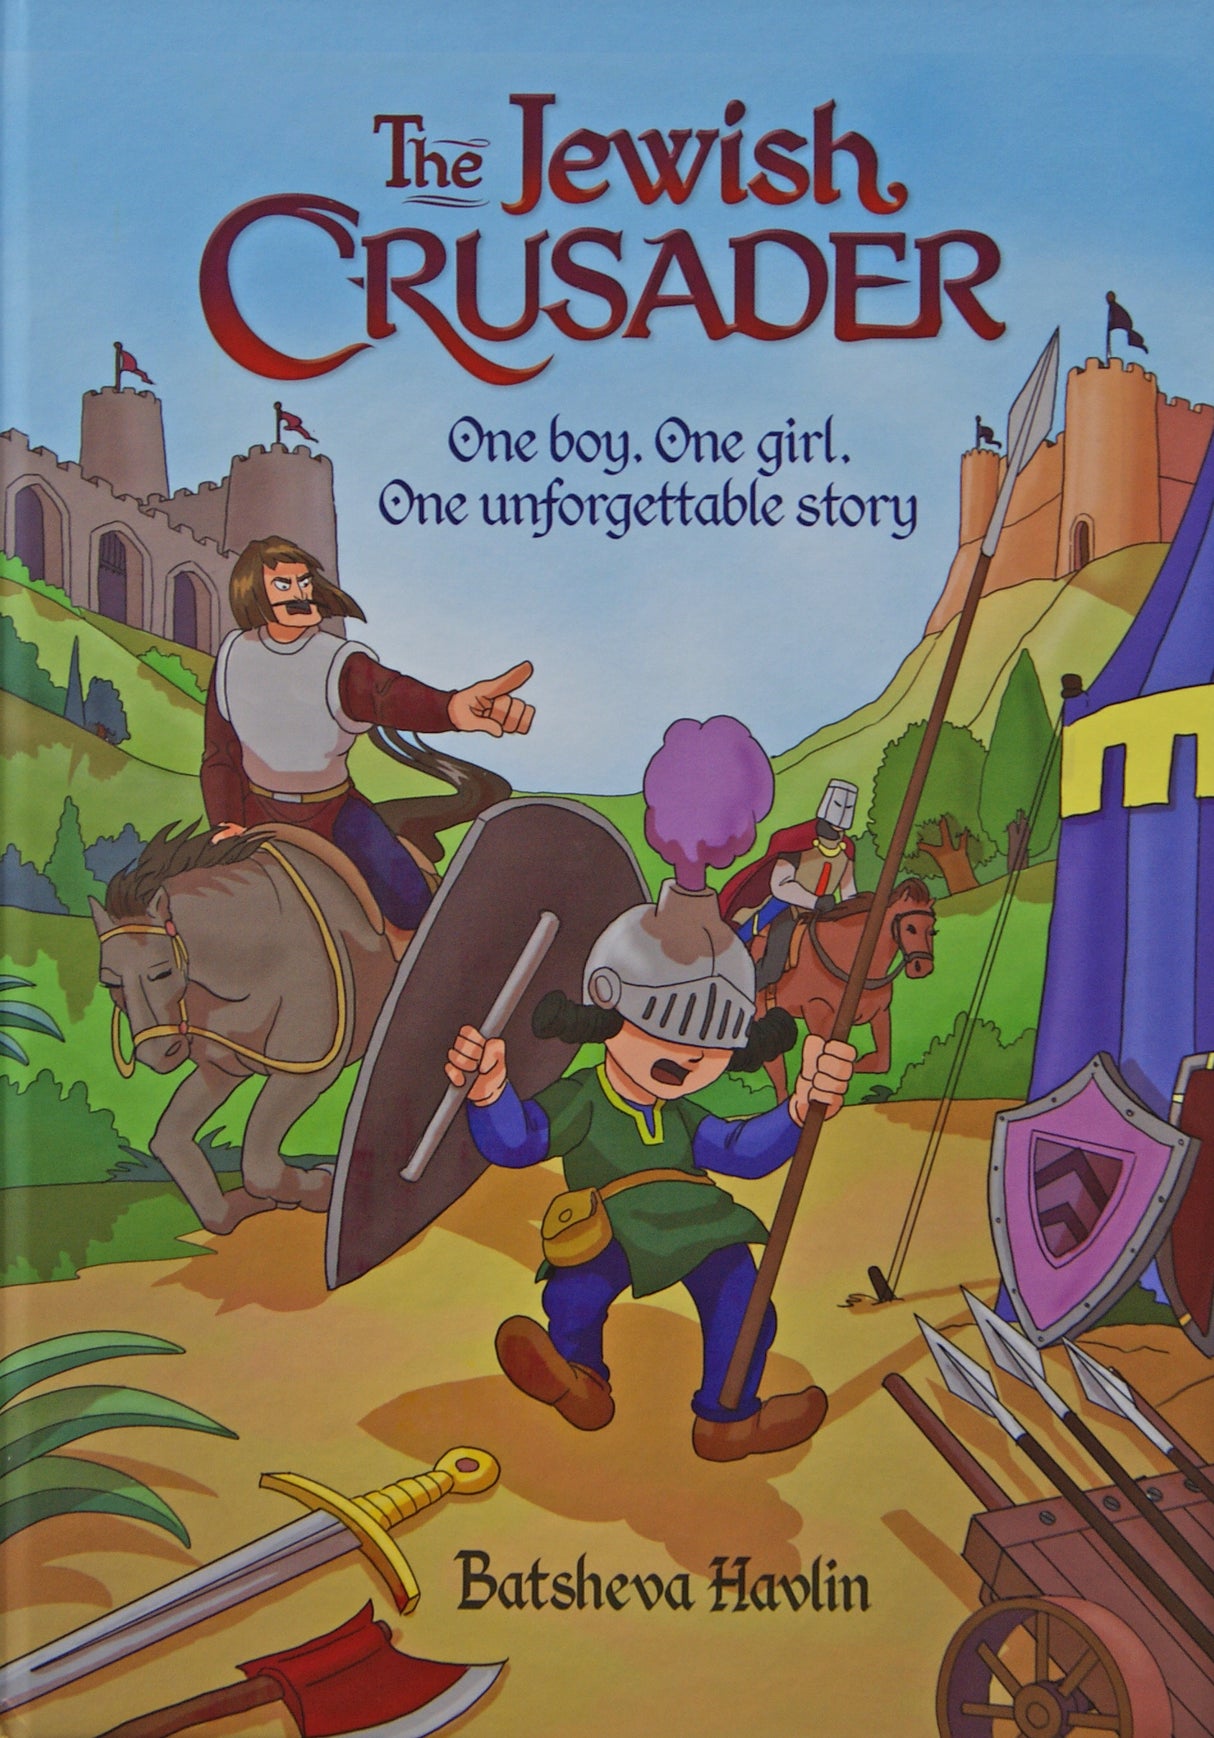 The Jewish Crusader